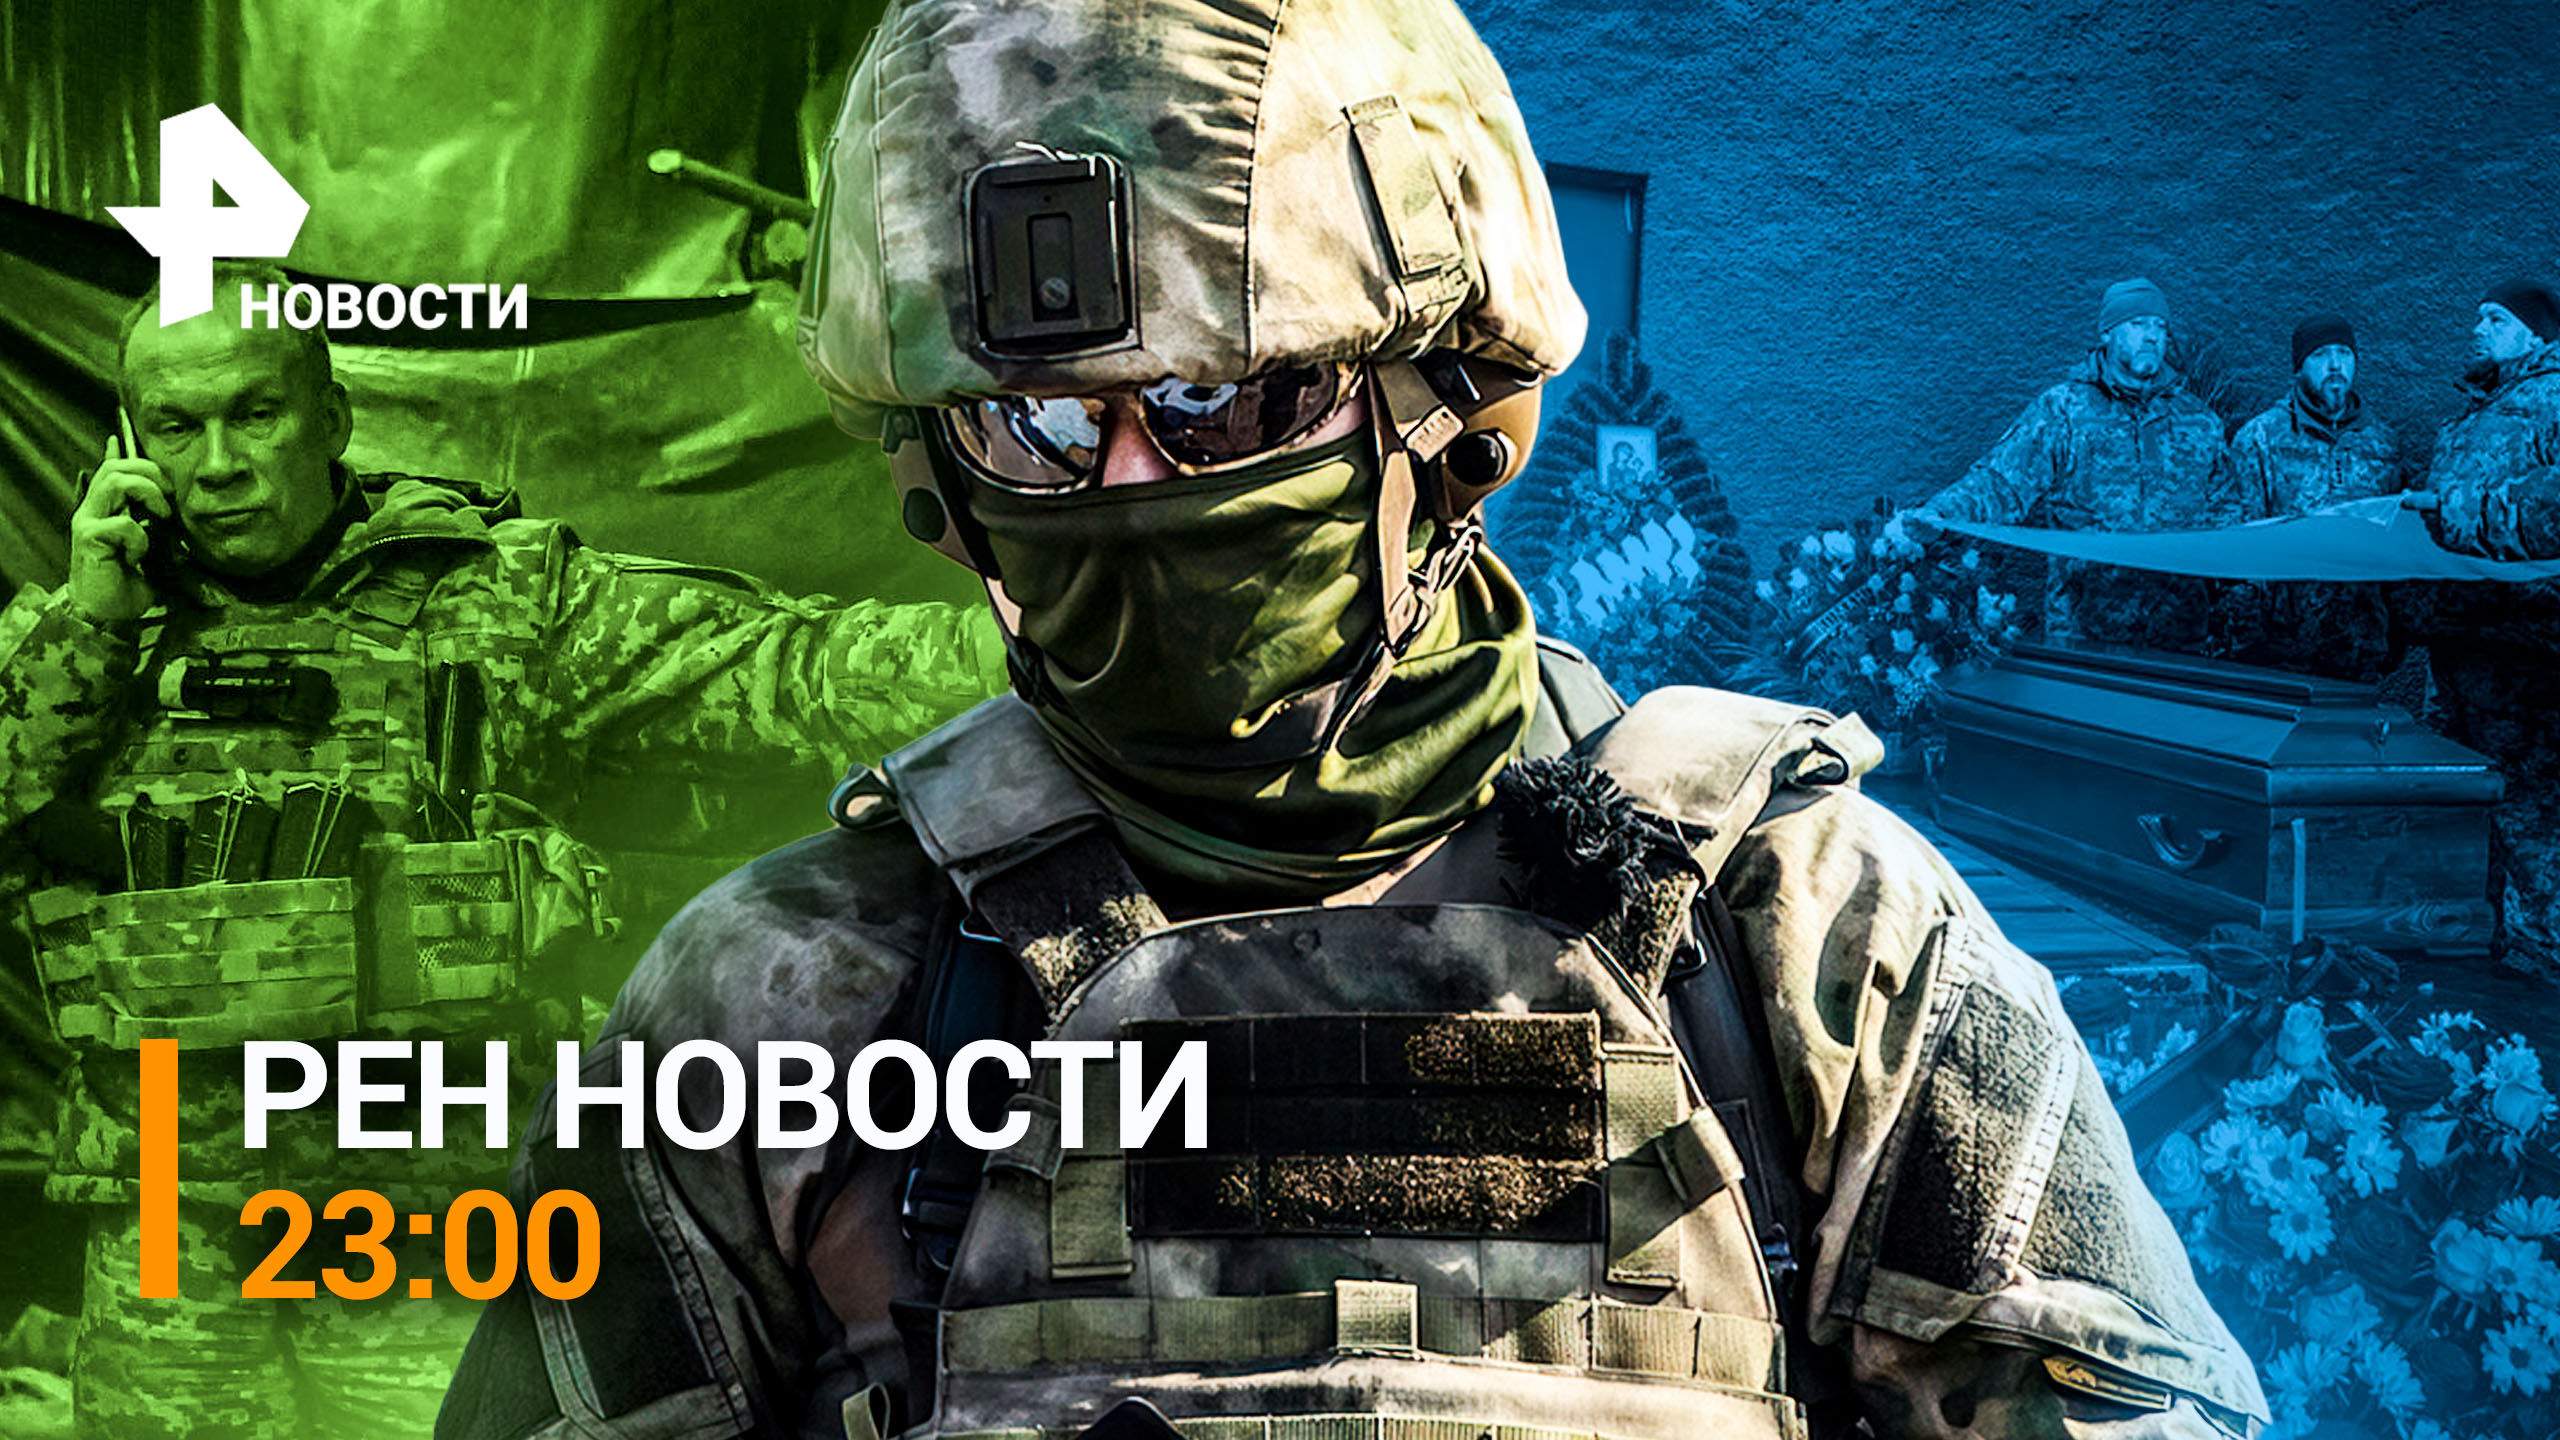 Российские силы начали зачистку окруженных в Соледаре бойцов ВСУ / РЕН НОВОСТИ от 11.01.23